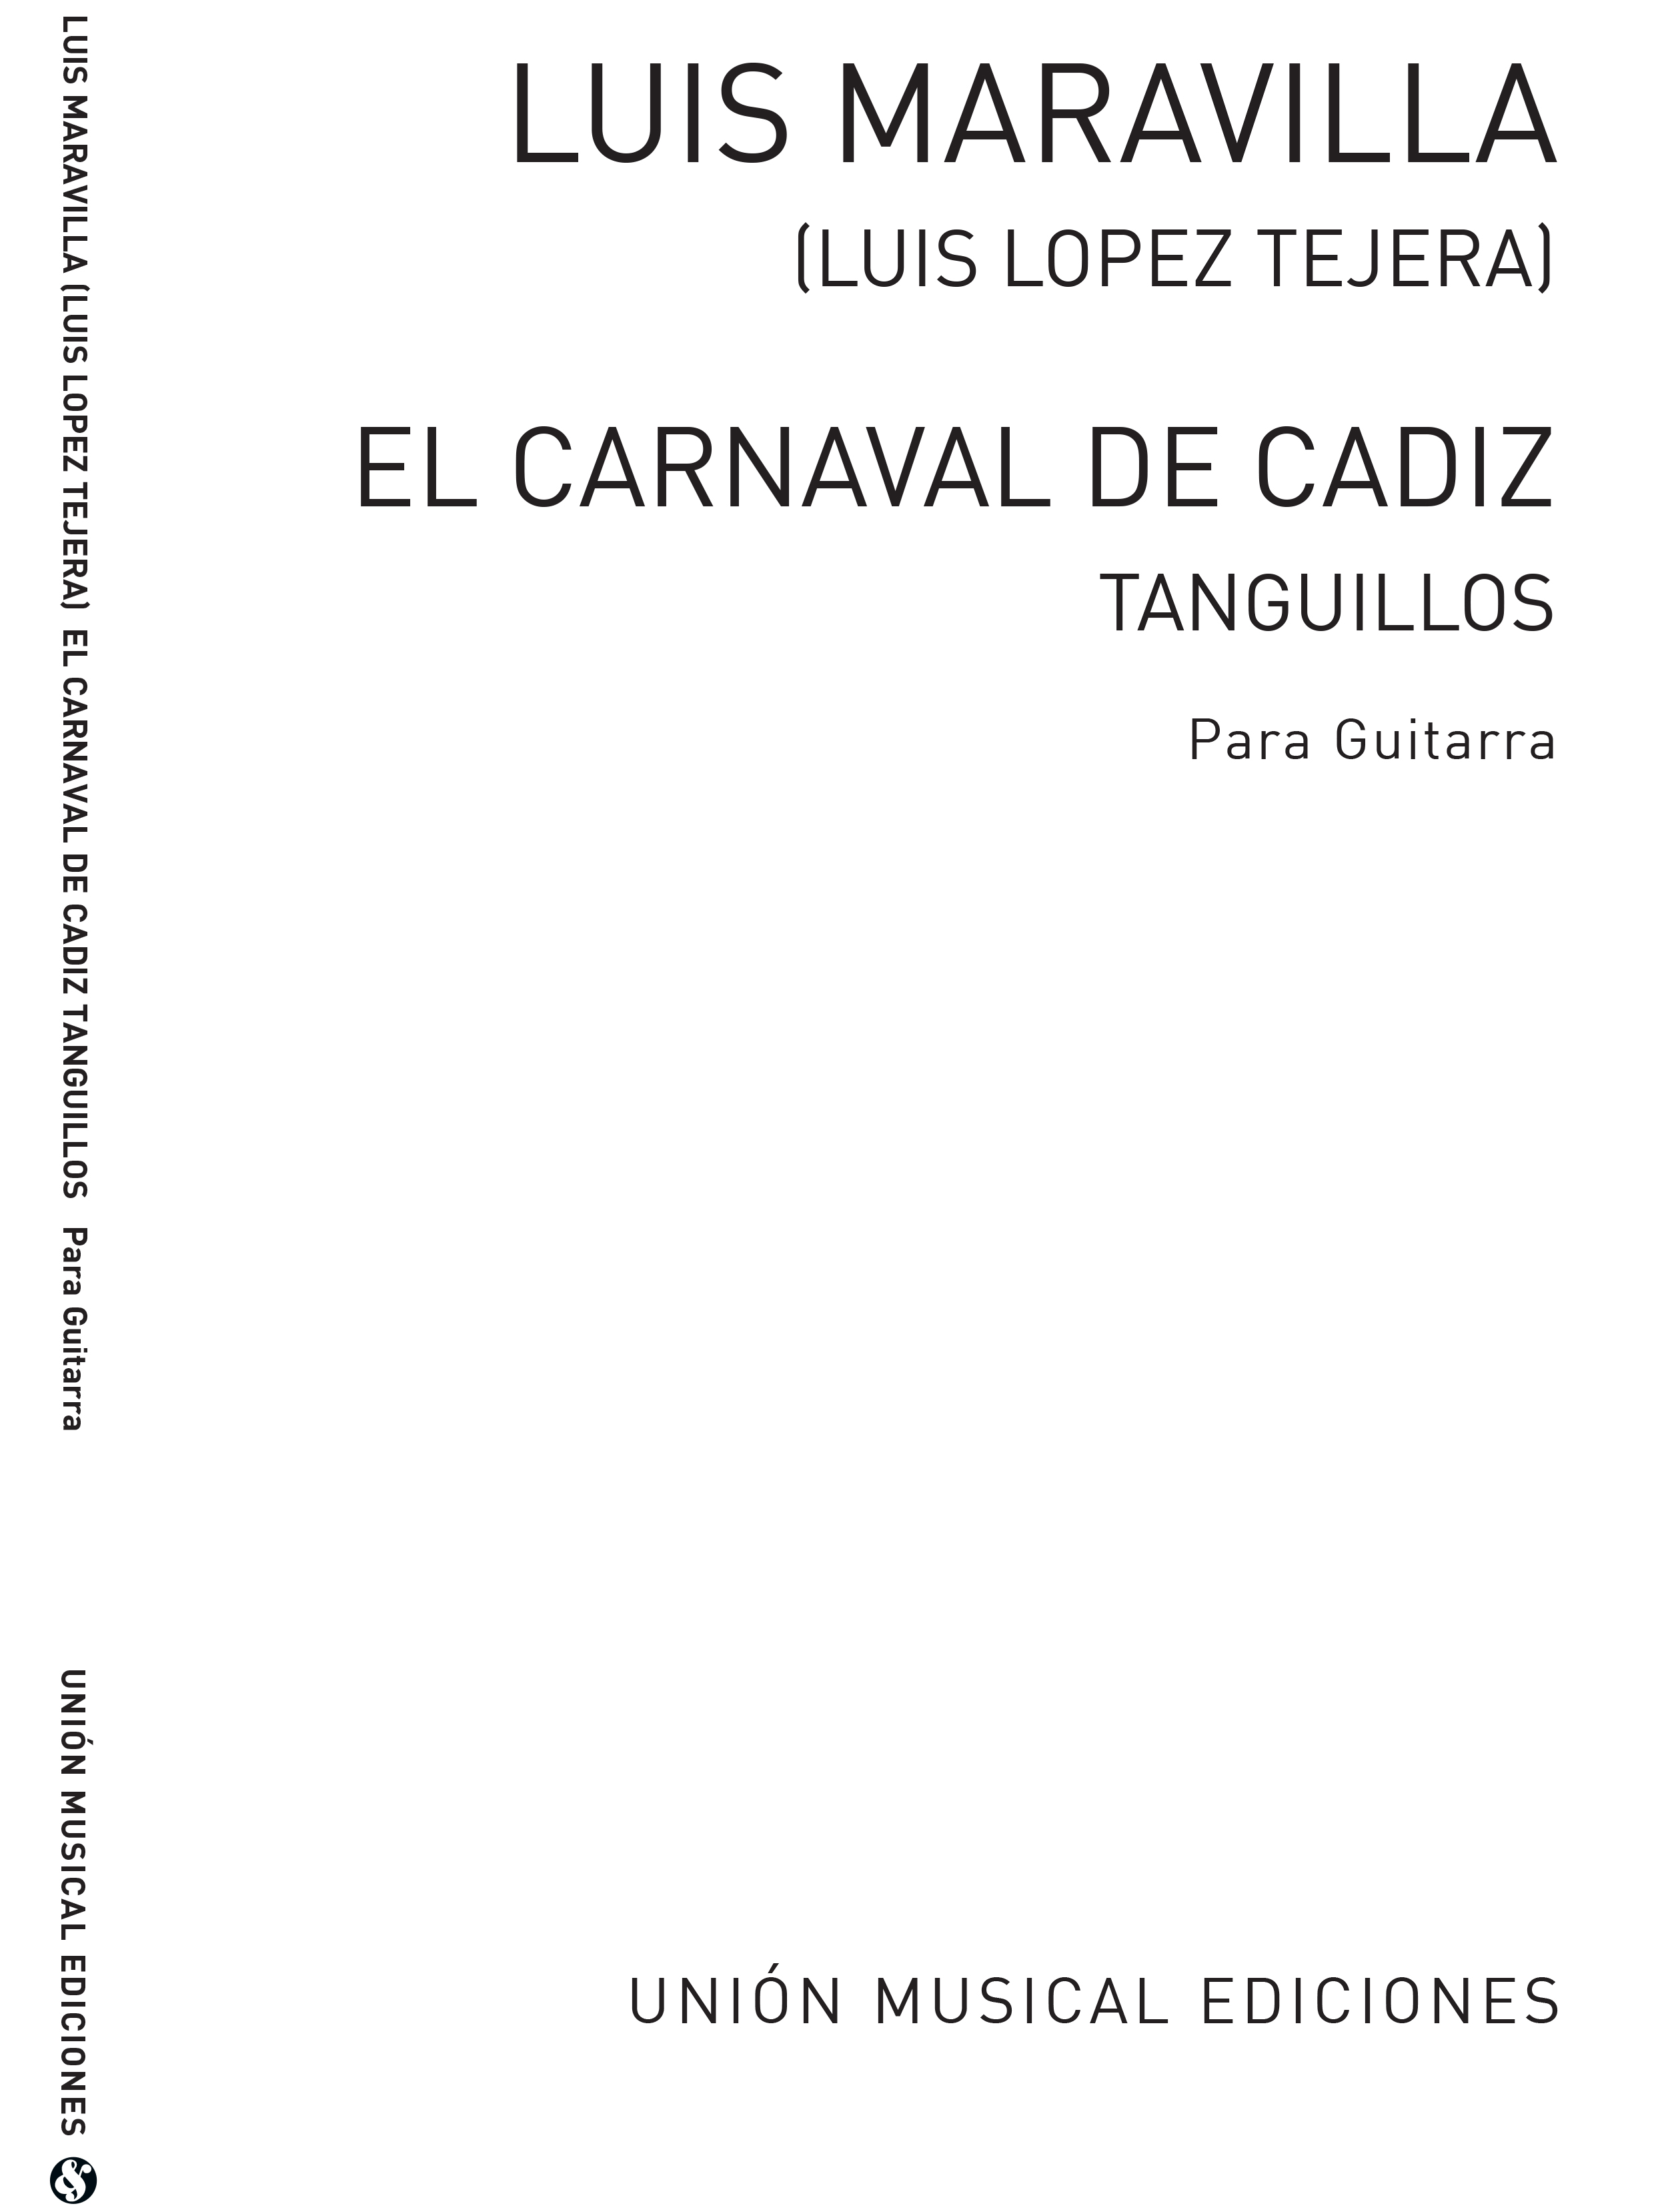 Luis Maravilla: El Carnaval De Cadiz Tanguillos: Guitar: Instrumental Work